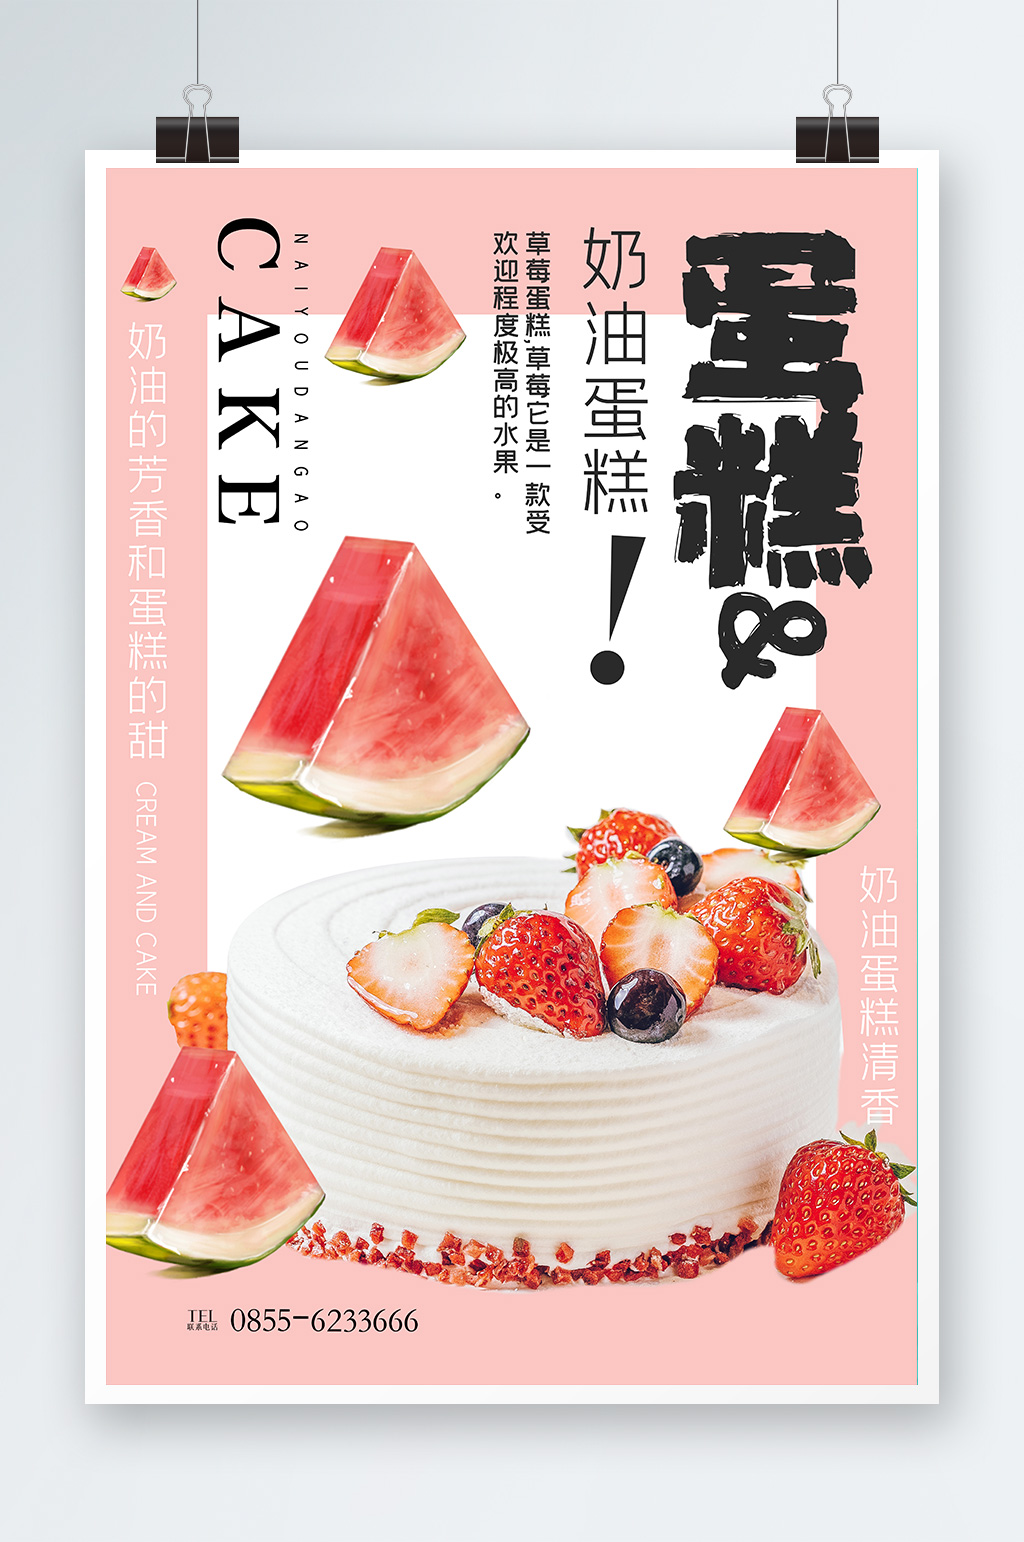 蛋糕会员日甜品店创意宣传海报设计素材